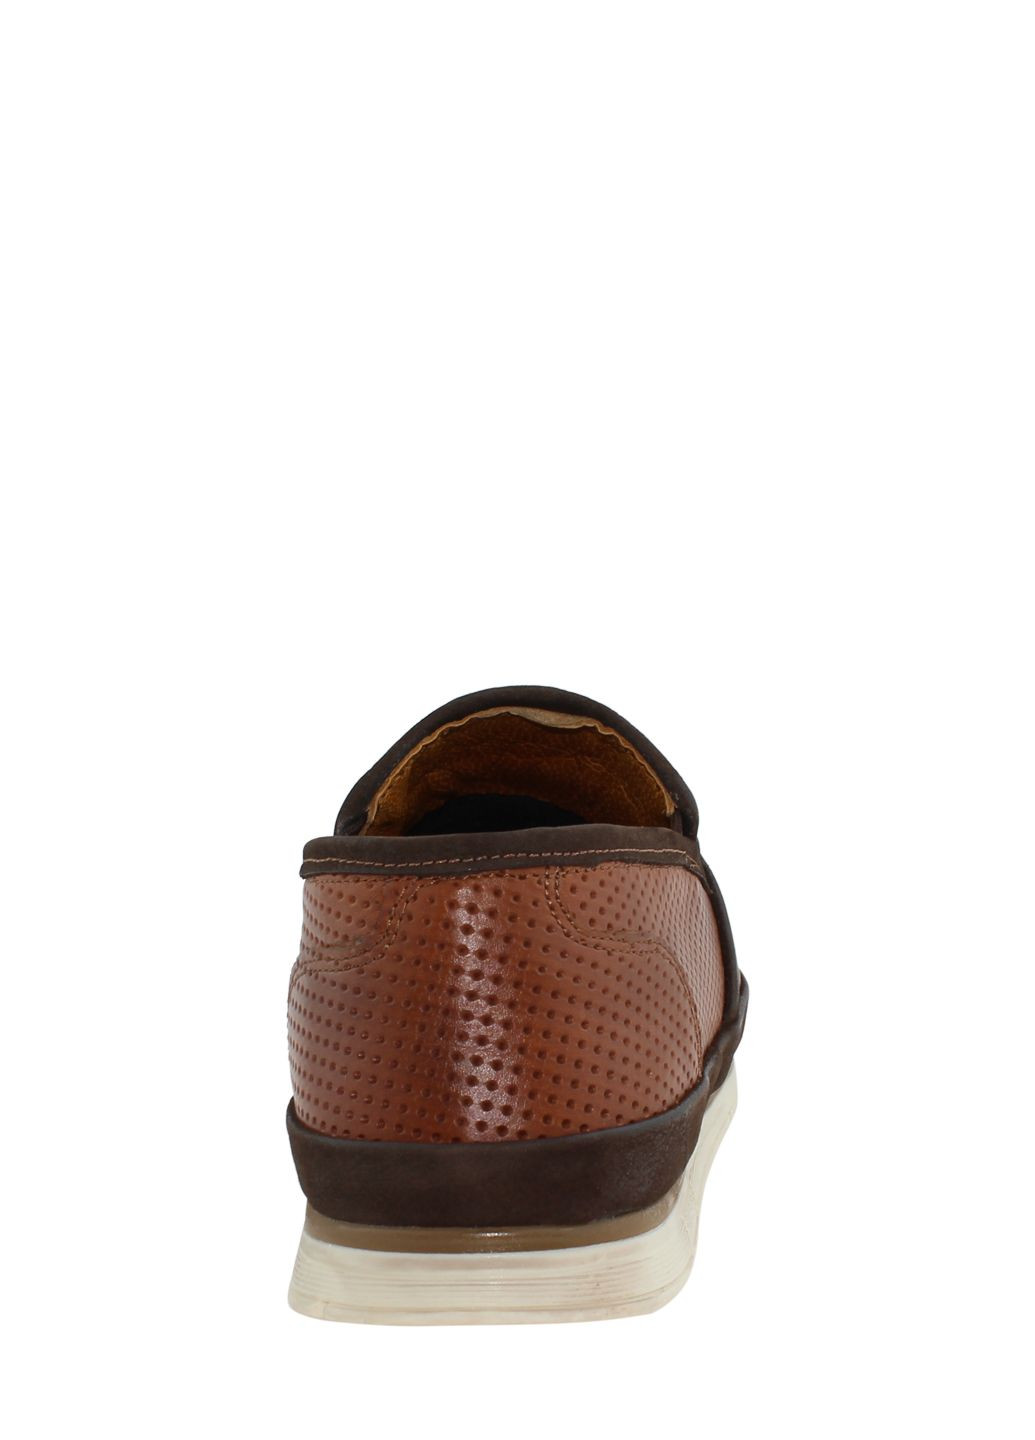 Коричневые туфли g1016.04 коричневый Goover